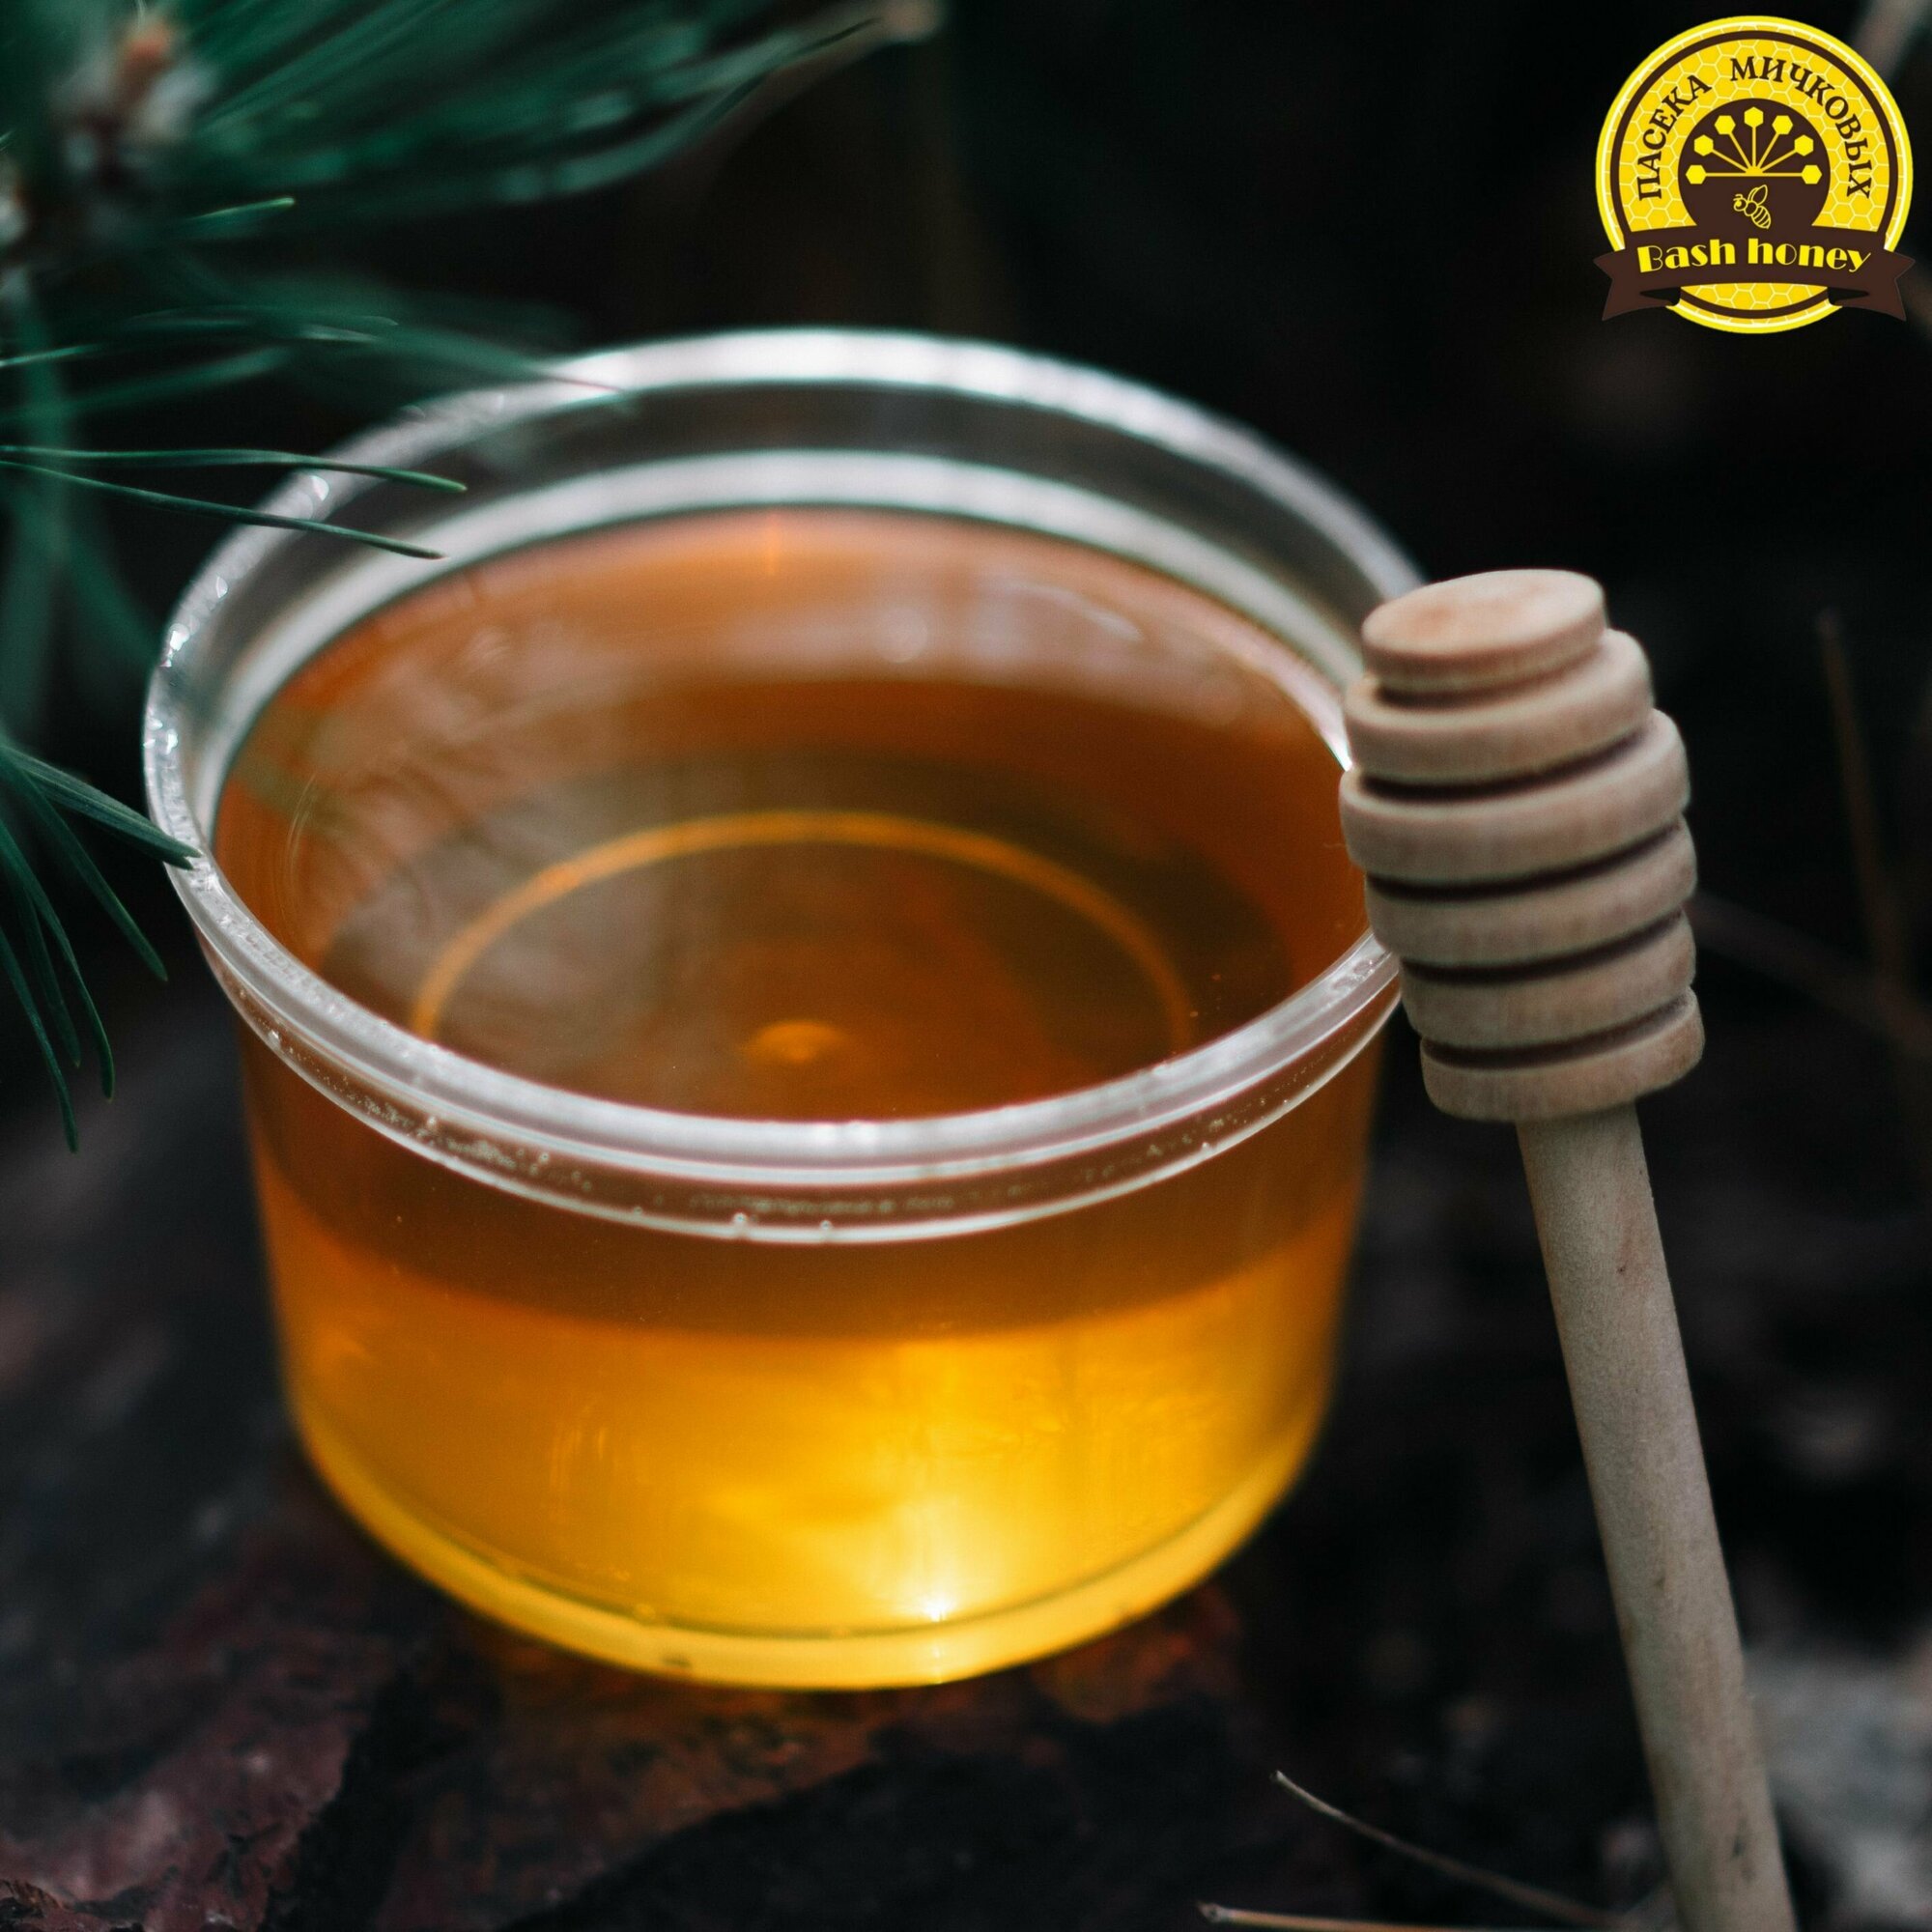 мед башкирский липовый вкусный натуральный лечебный кондитерский без сахара фасованный для вас - фотография № 10